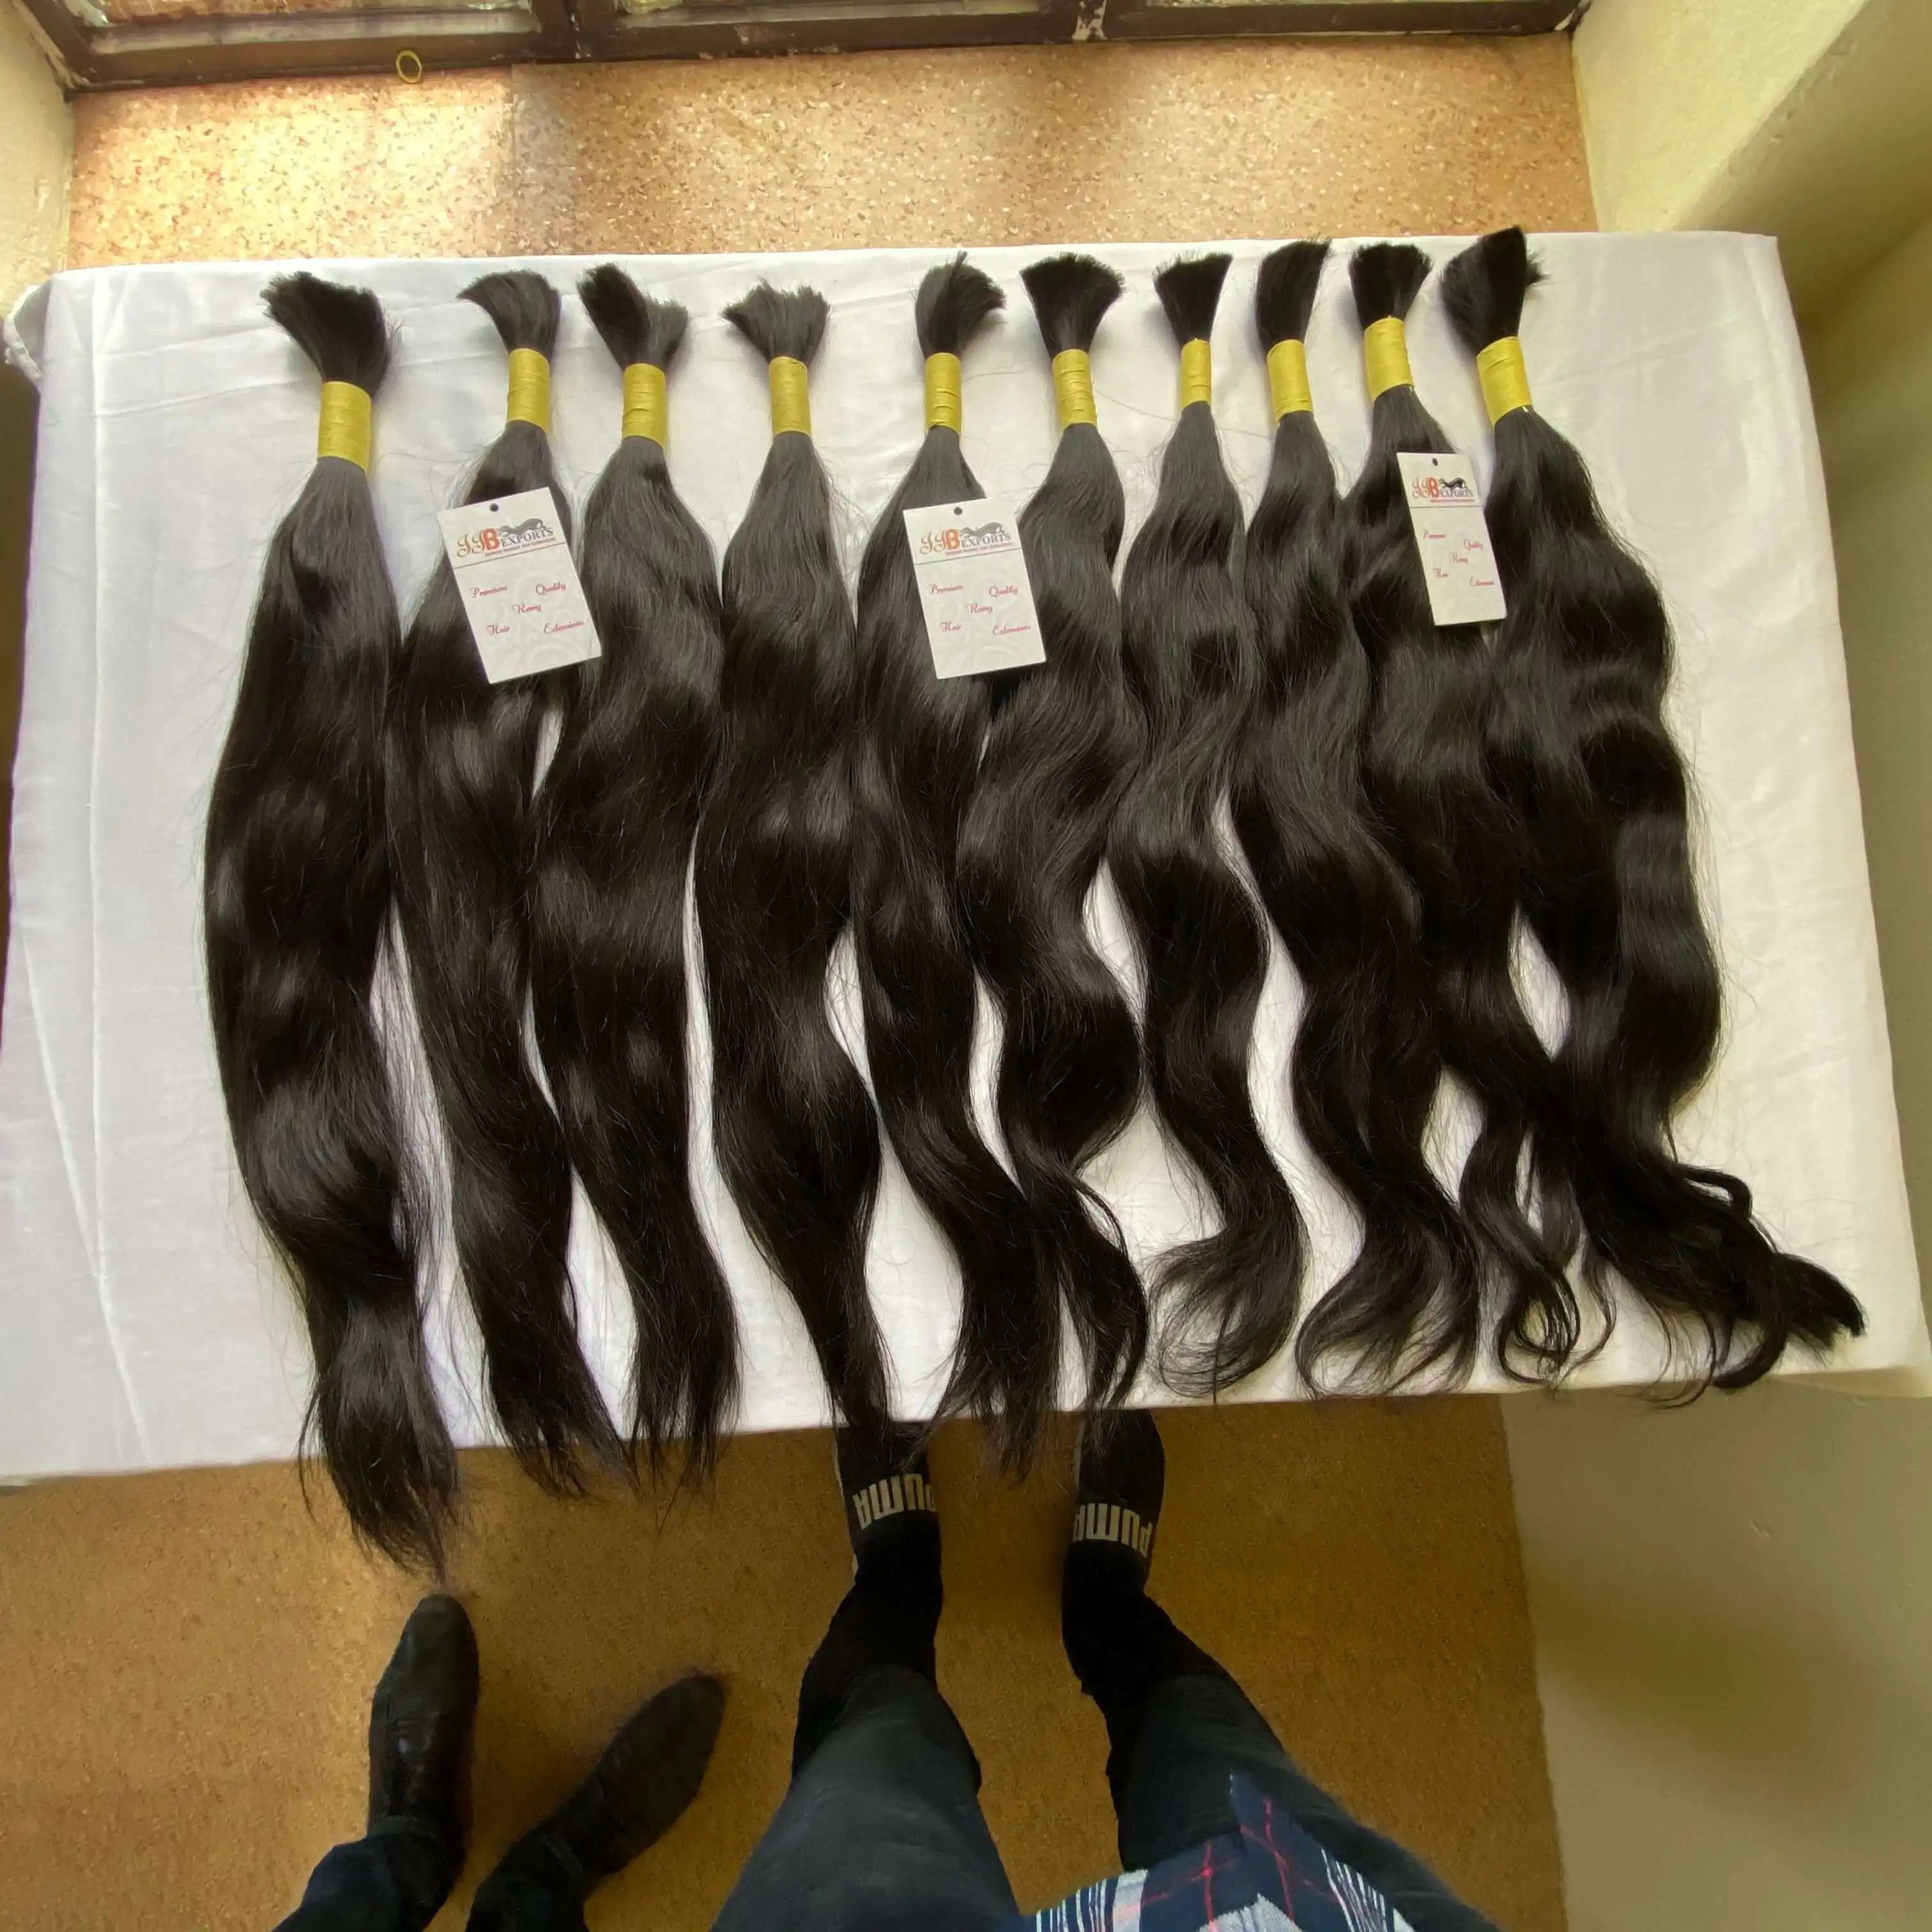 סיטונאי בתולה ברזילאי/קמבודי/פרואני שיער טבעי בתפזורת לקנות מהודו, רמי מקדש גלם לא מעובד שיער זמין